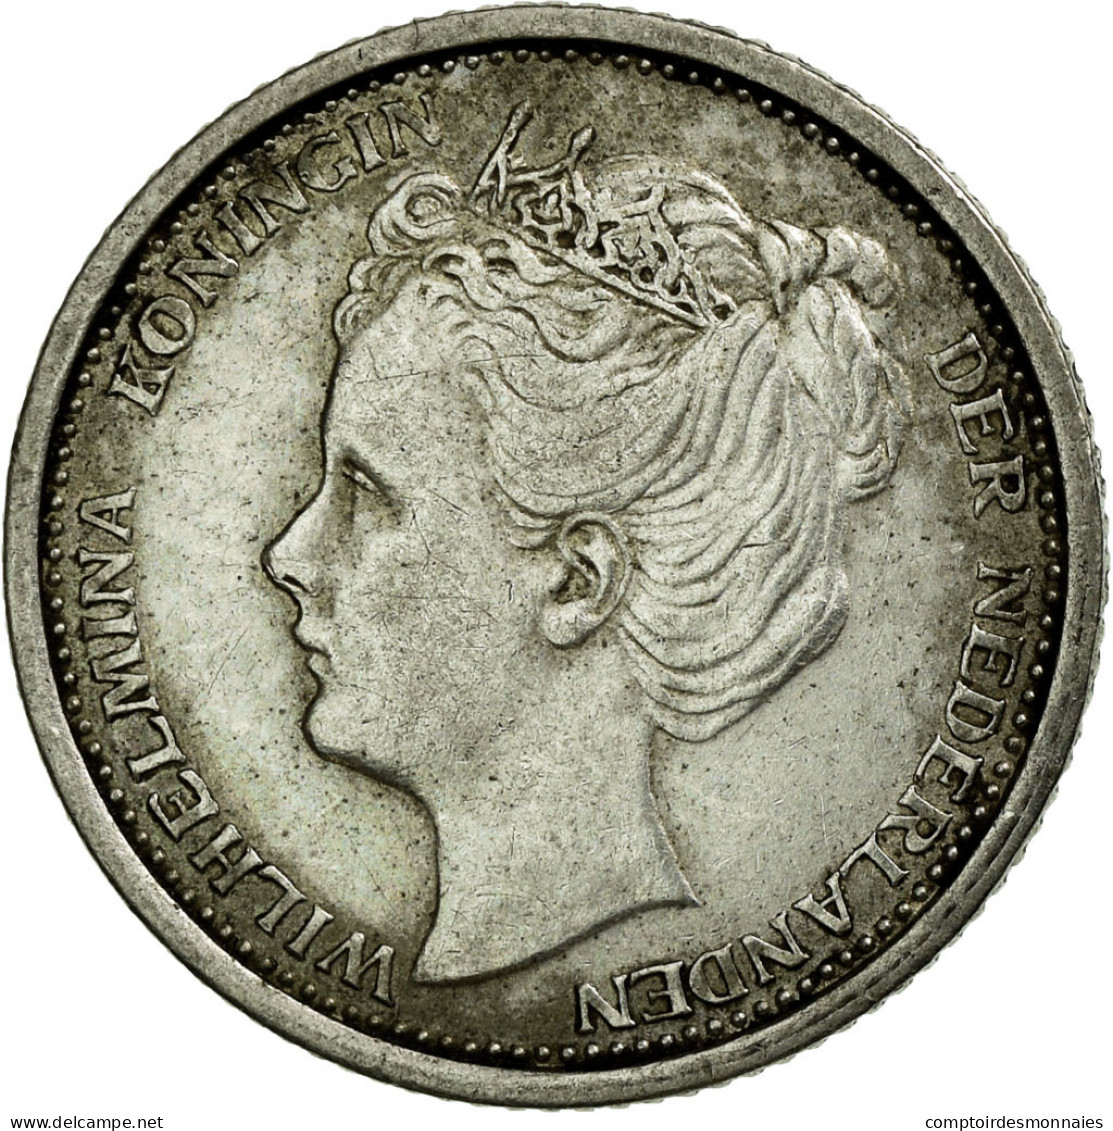 Monnaie, Pays-Bas, Wilhelmina I, 10 Cents, 1904, SUP, Argent, KM:136 - 10 Cent